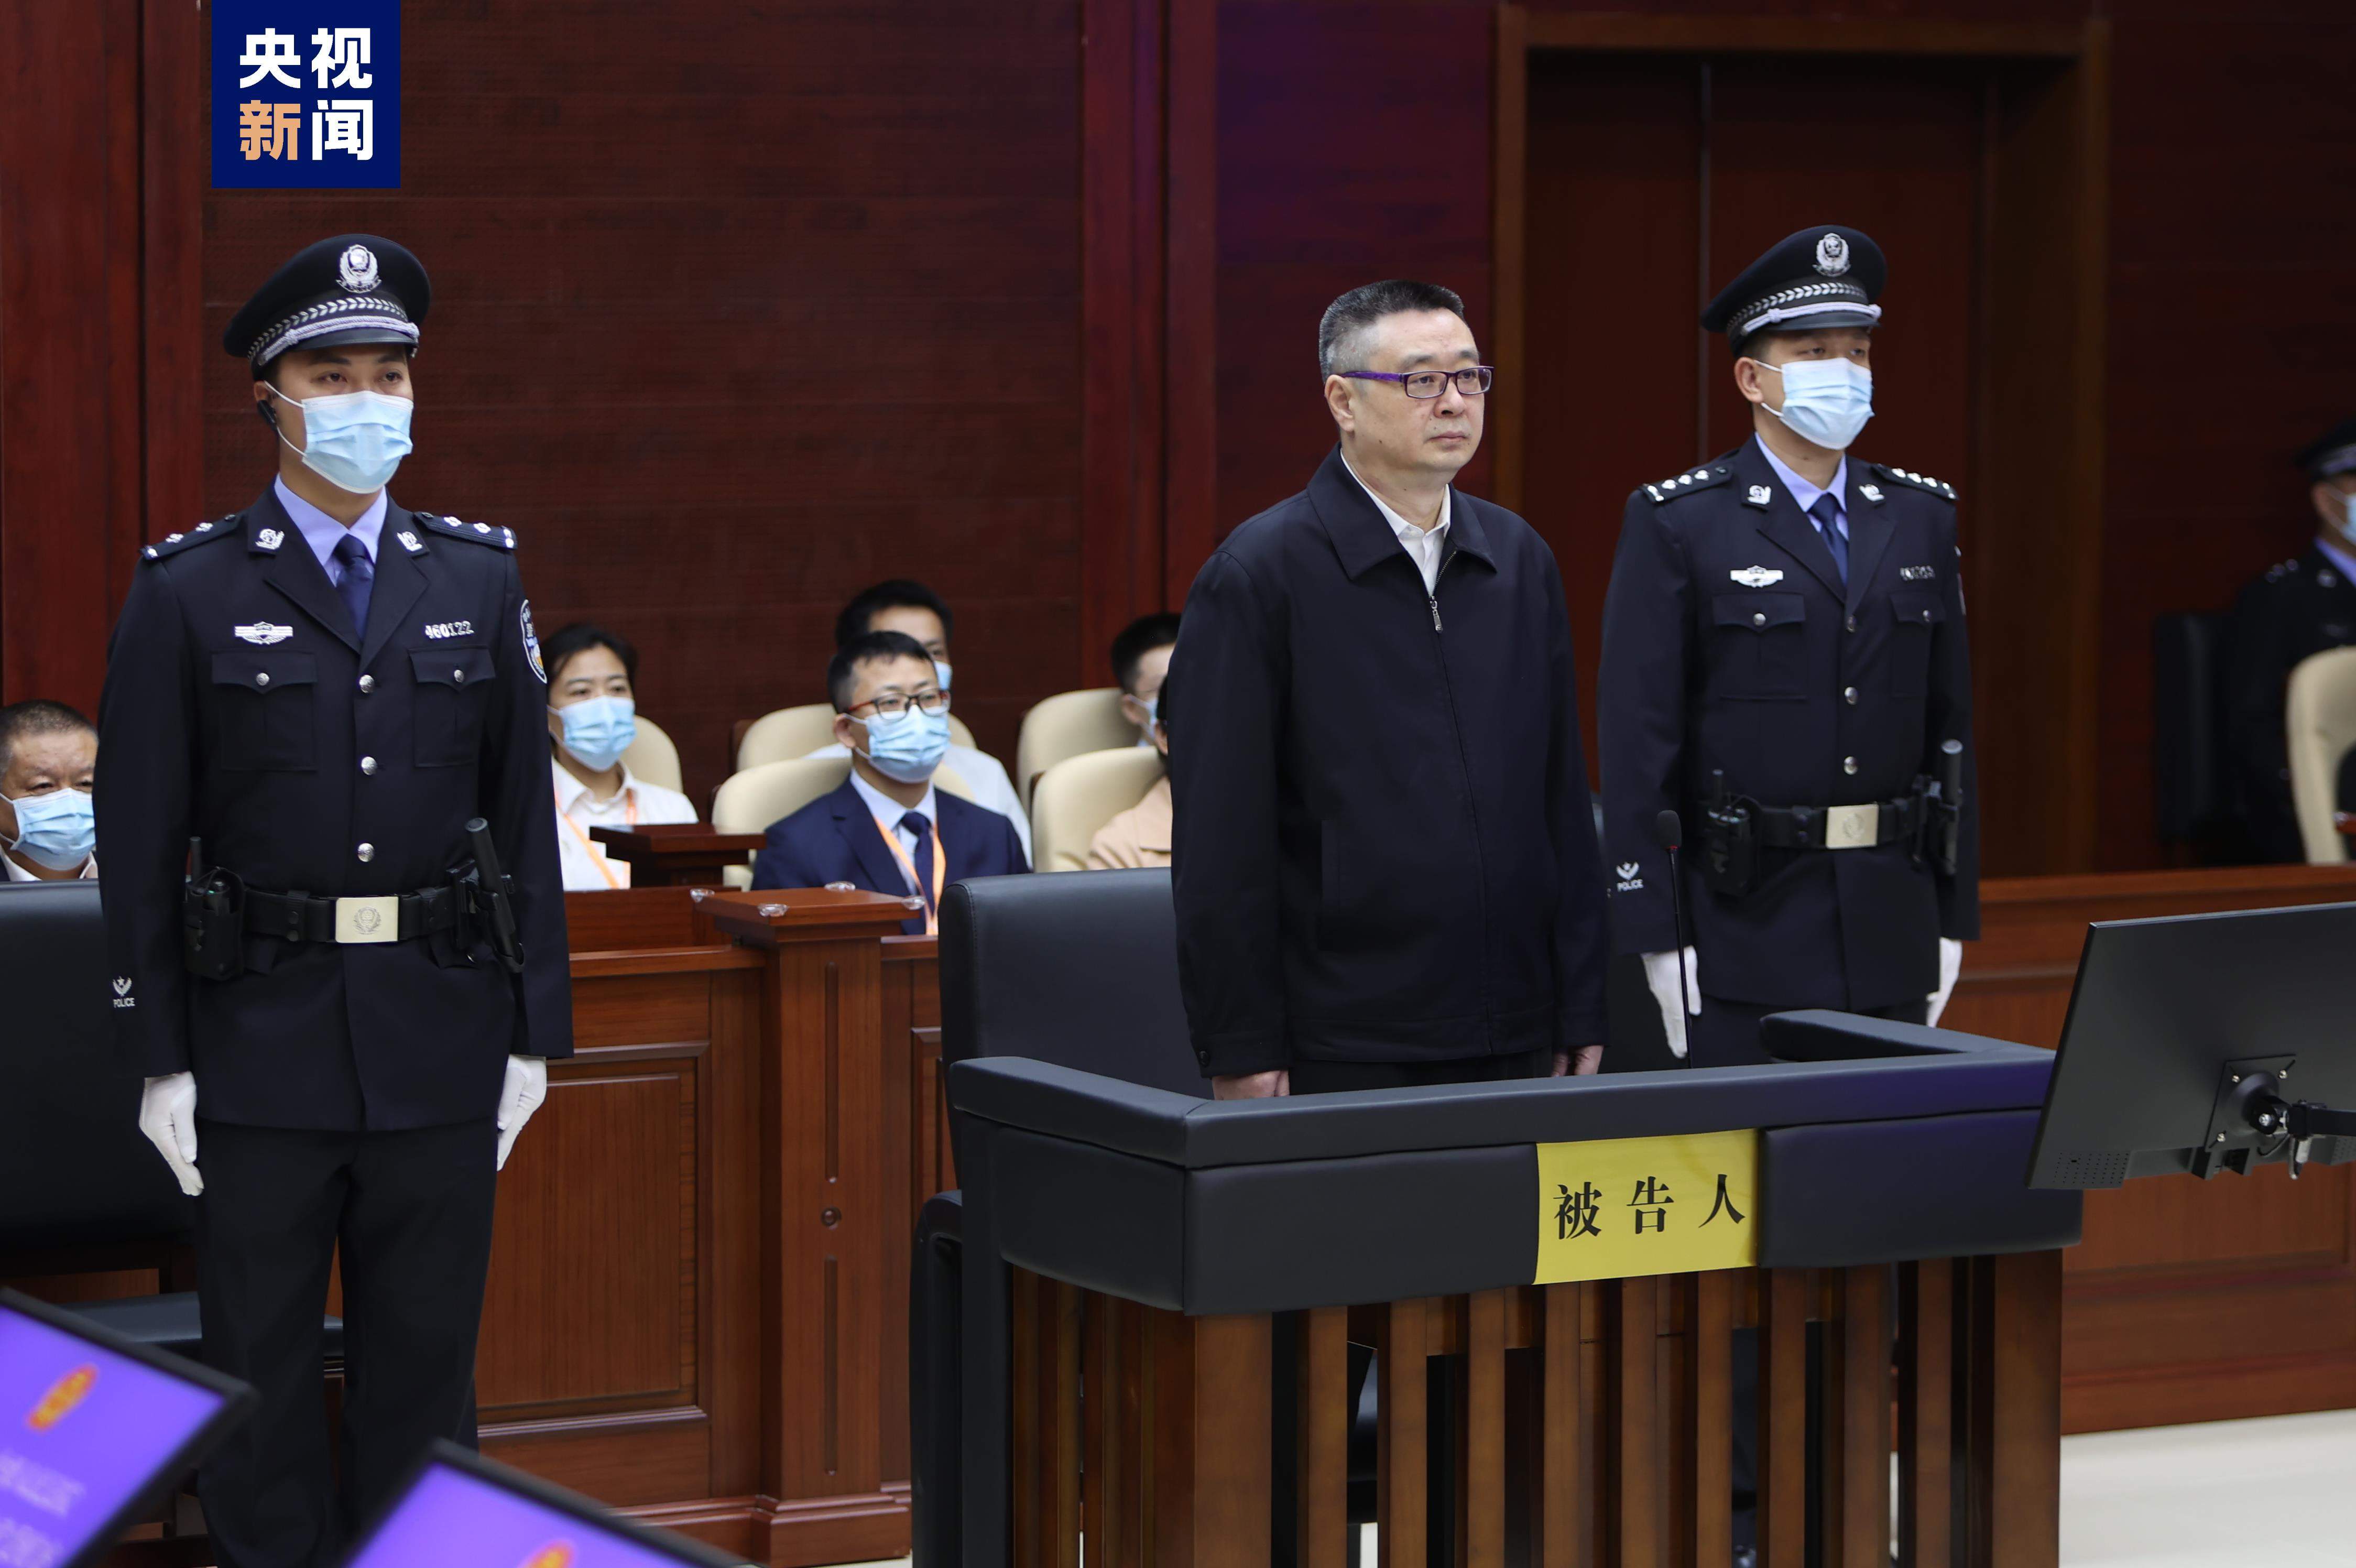 广西壮族自治区原副主席刘宏武受贿一案一审开庭